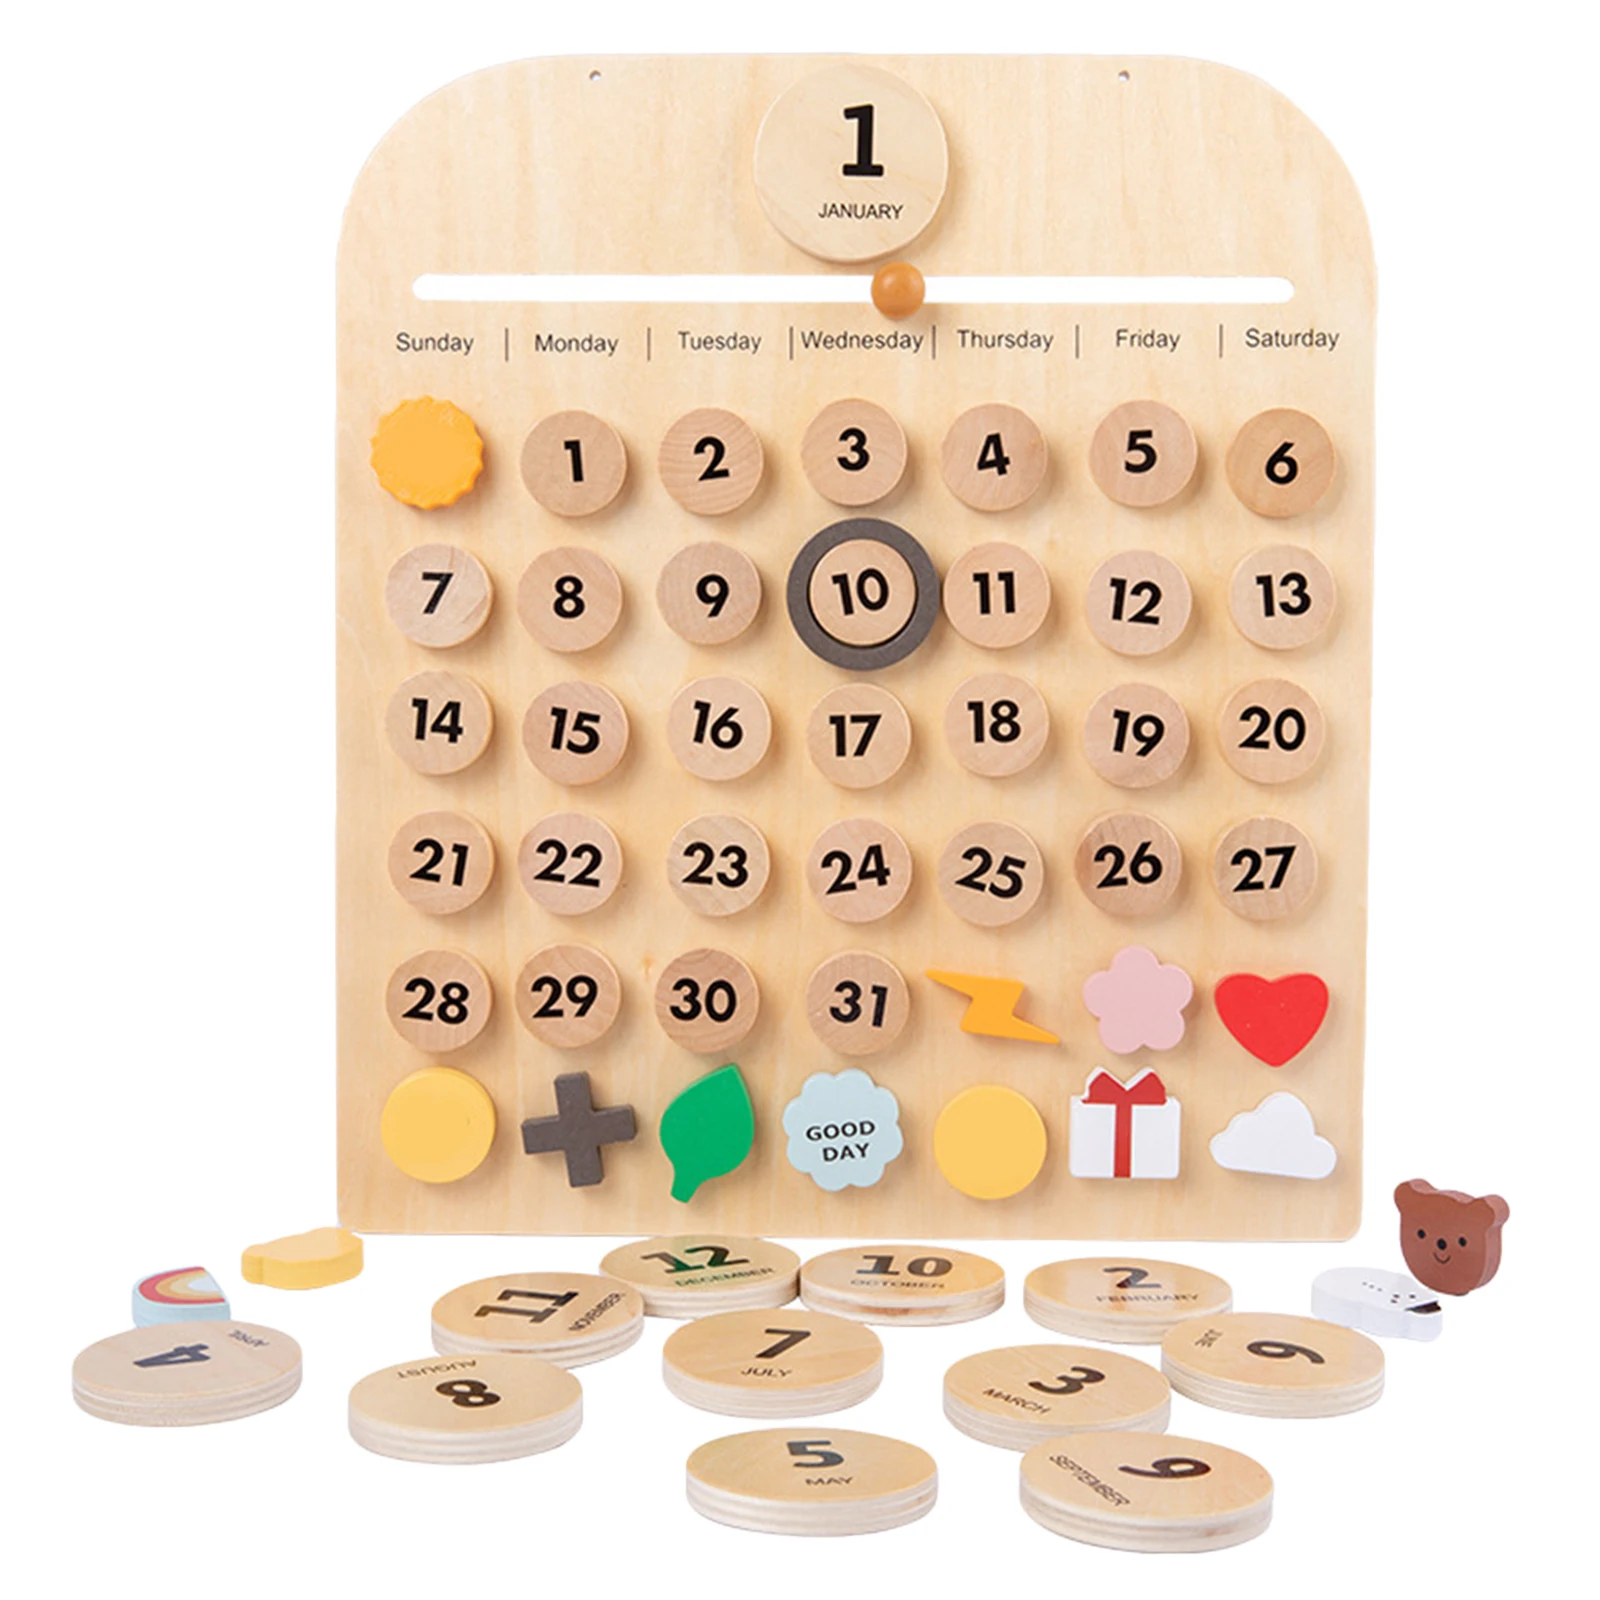 Wooden Desk Wall Calendar Montessori Calendar Homeschool for Kids Education